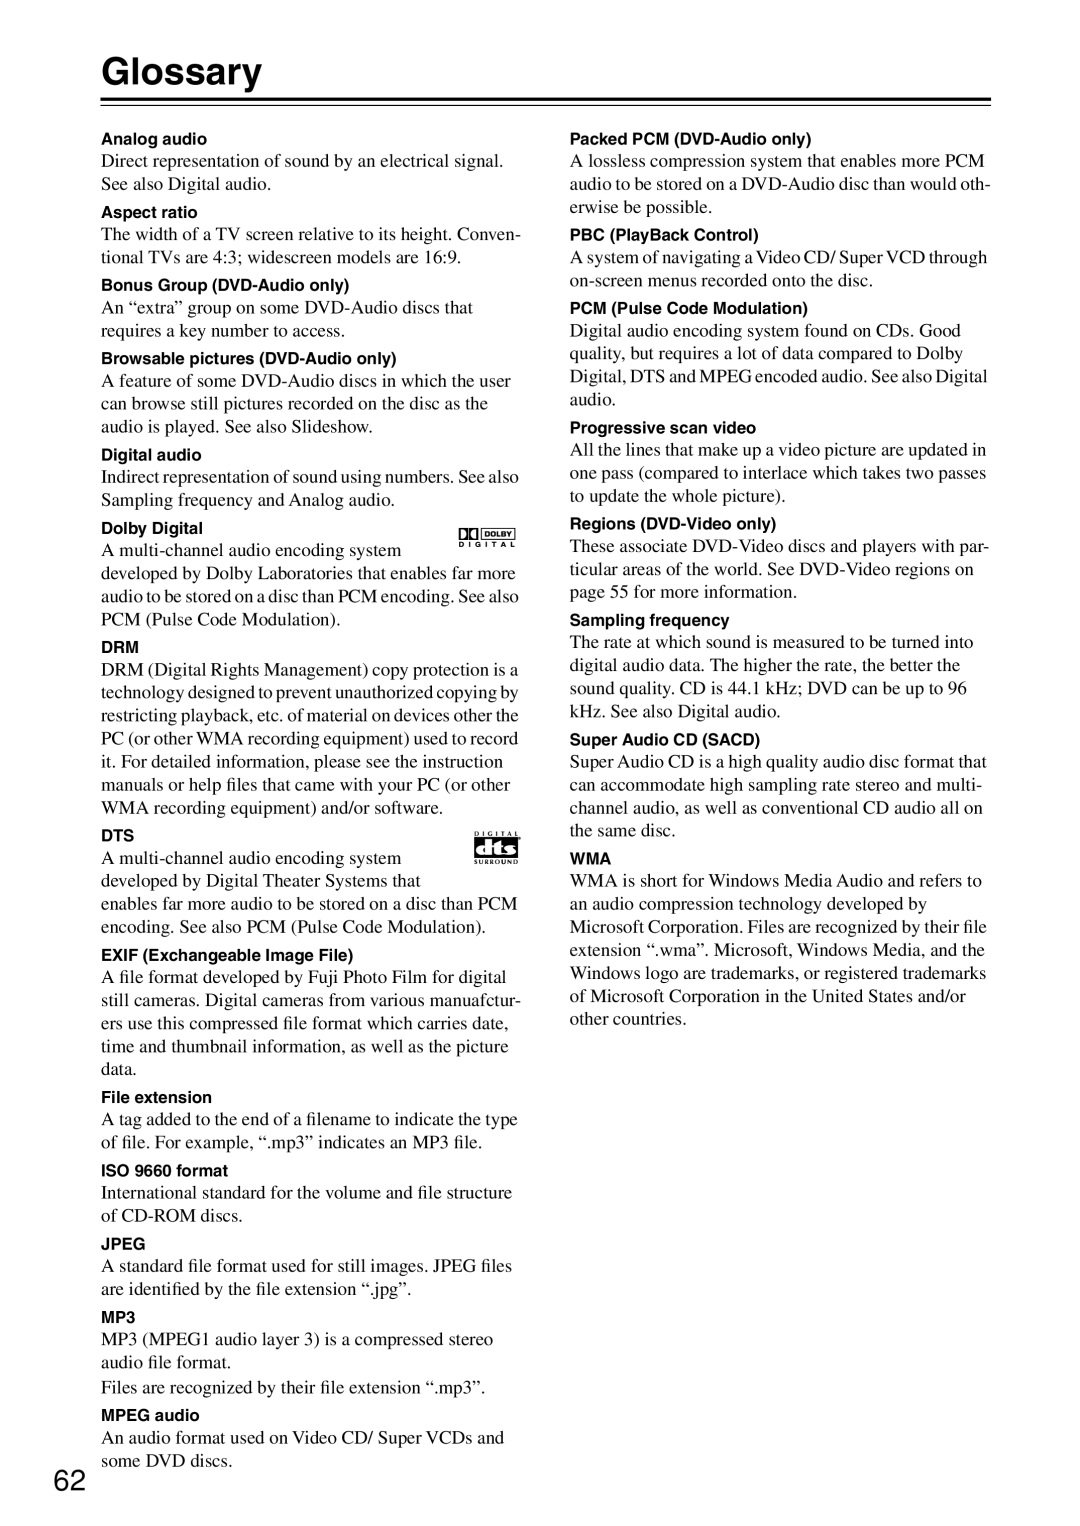 Onkyo DV-SP503E instruction manual Glossary 